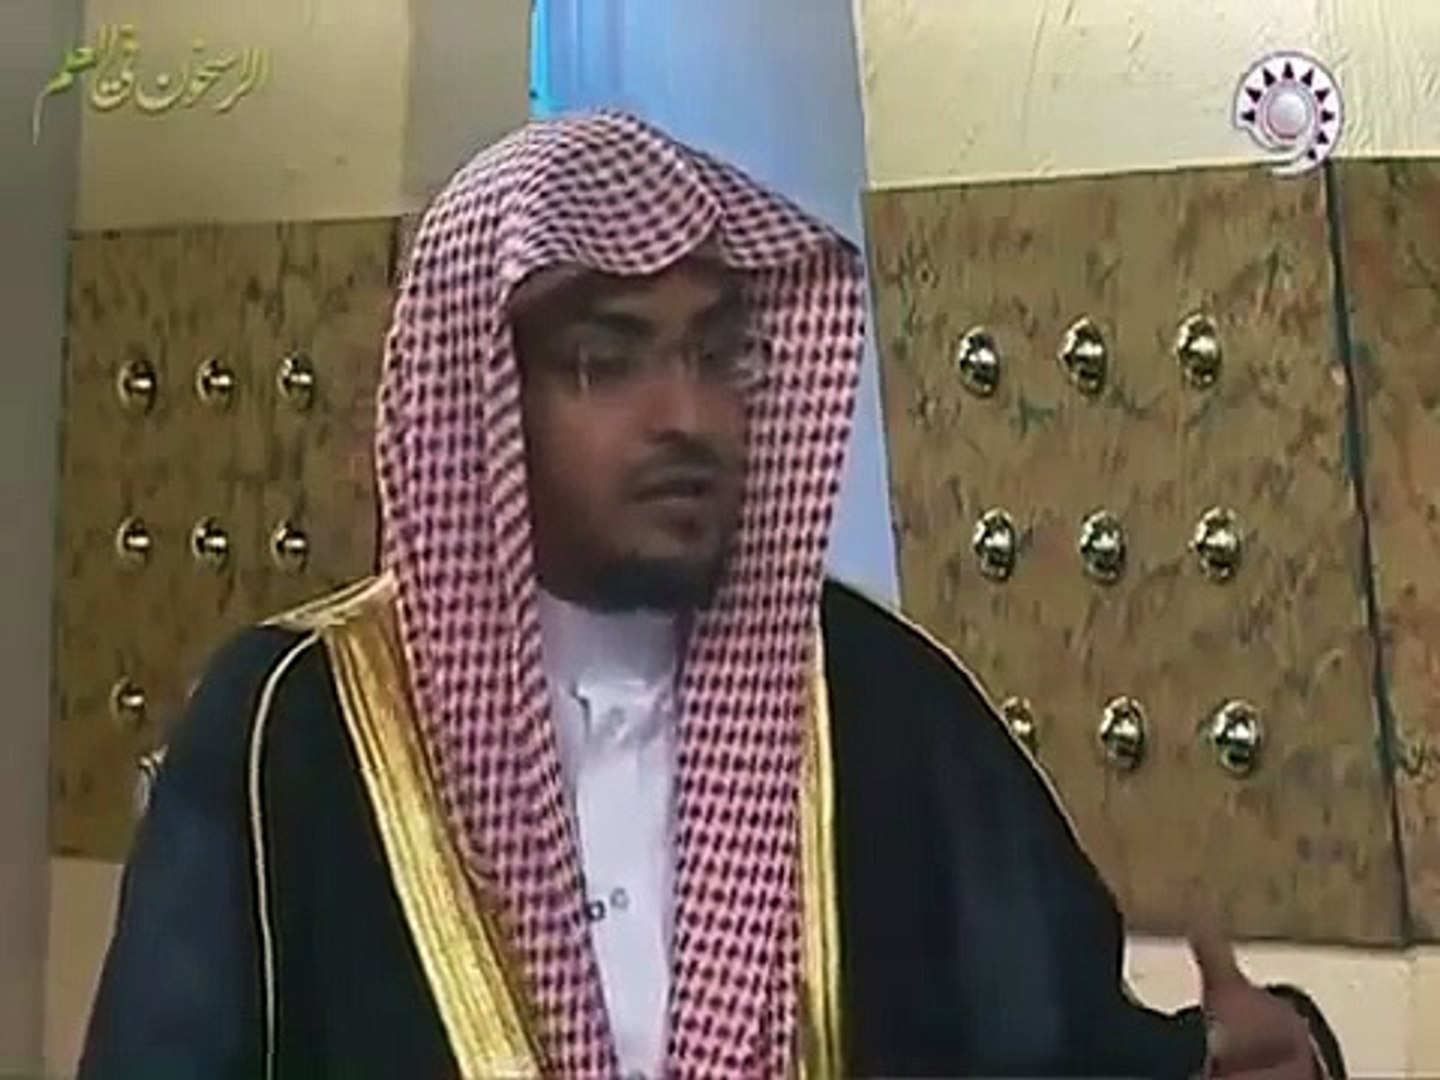 حكم صيام يوم عرفة لمن عليه قضاء من رمضان المغامسي Video Dailymotion